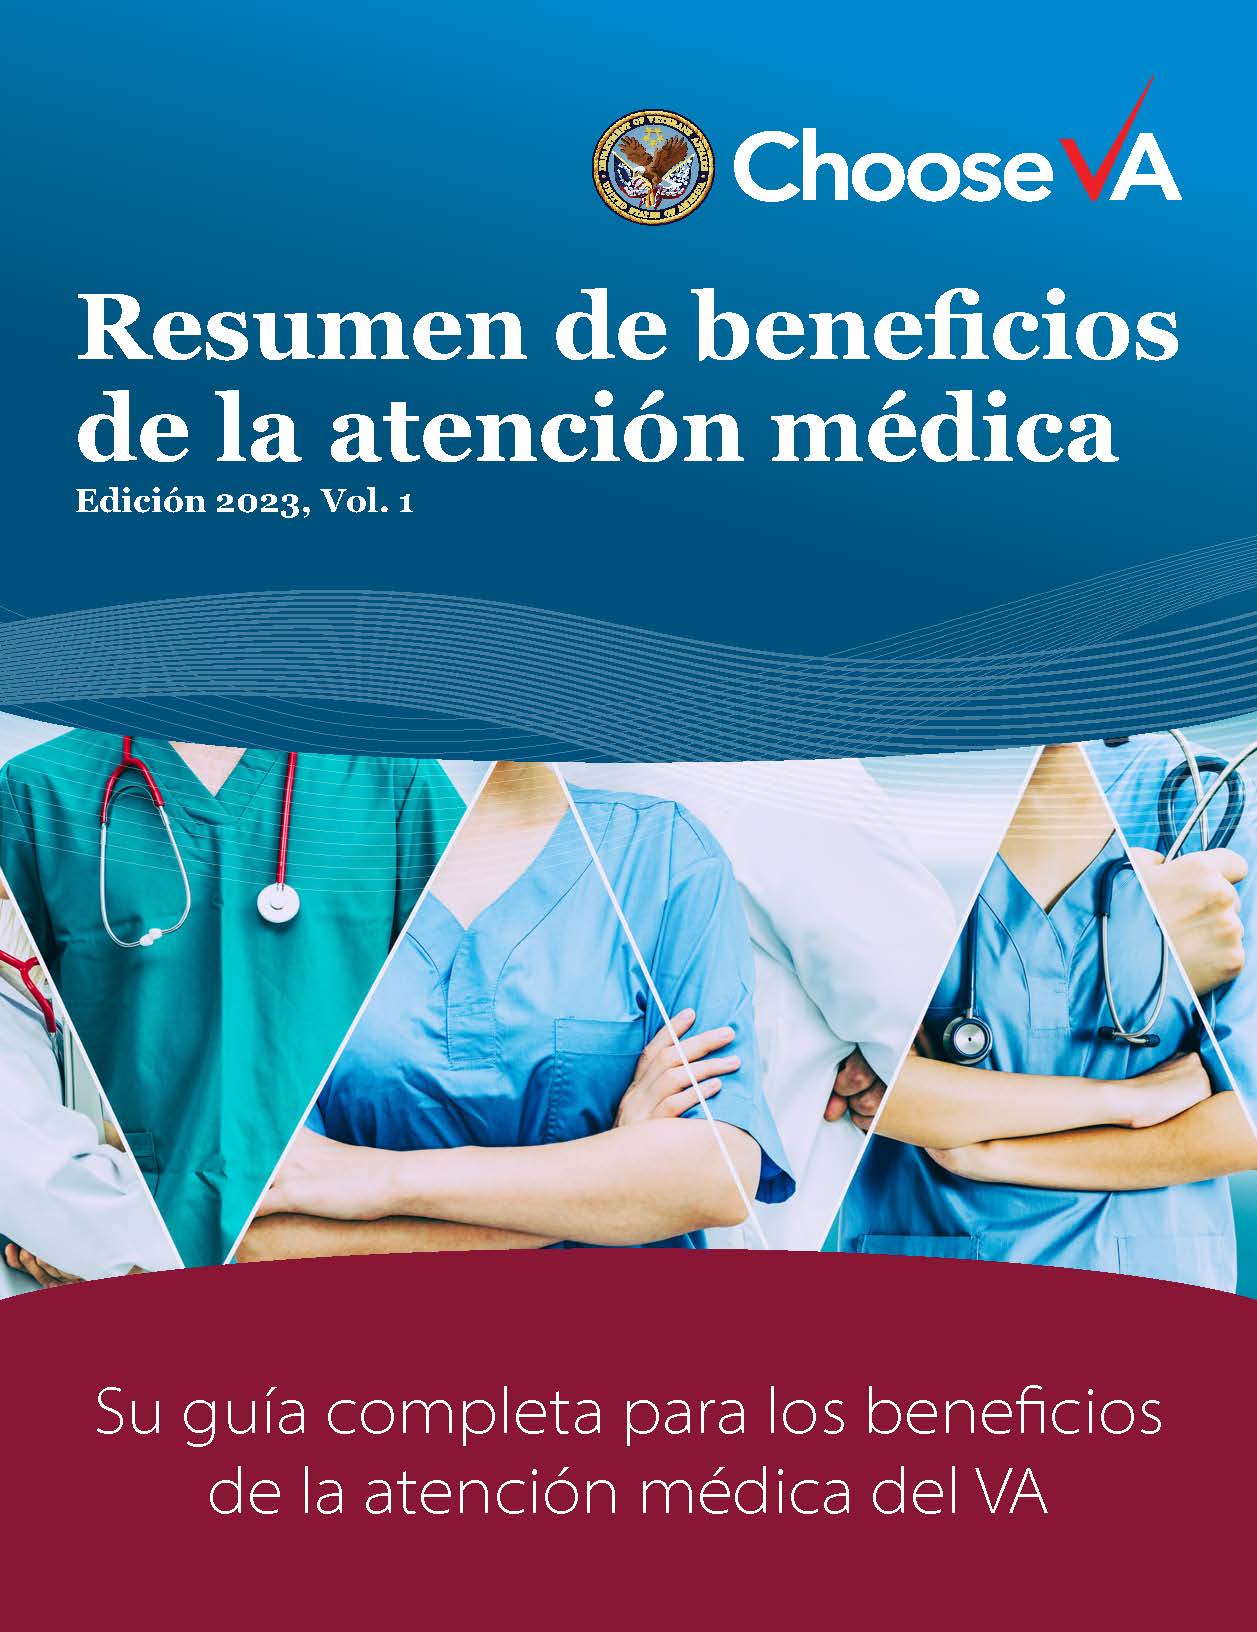 IB10-451 Resumen de beneficios de la atención médica, Edición 2023, Vol. 1